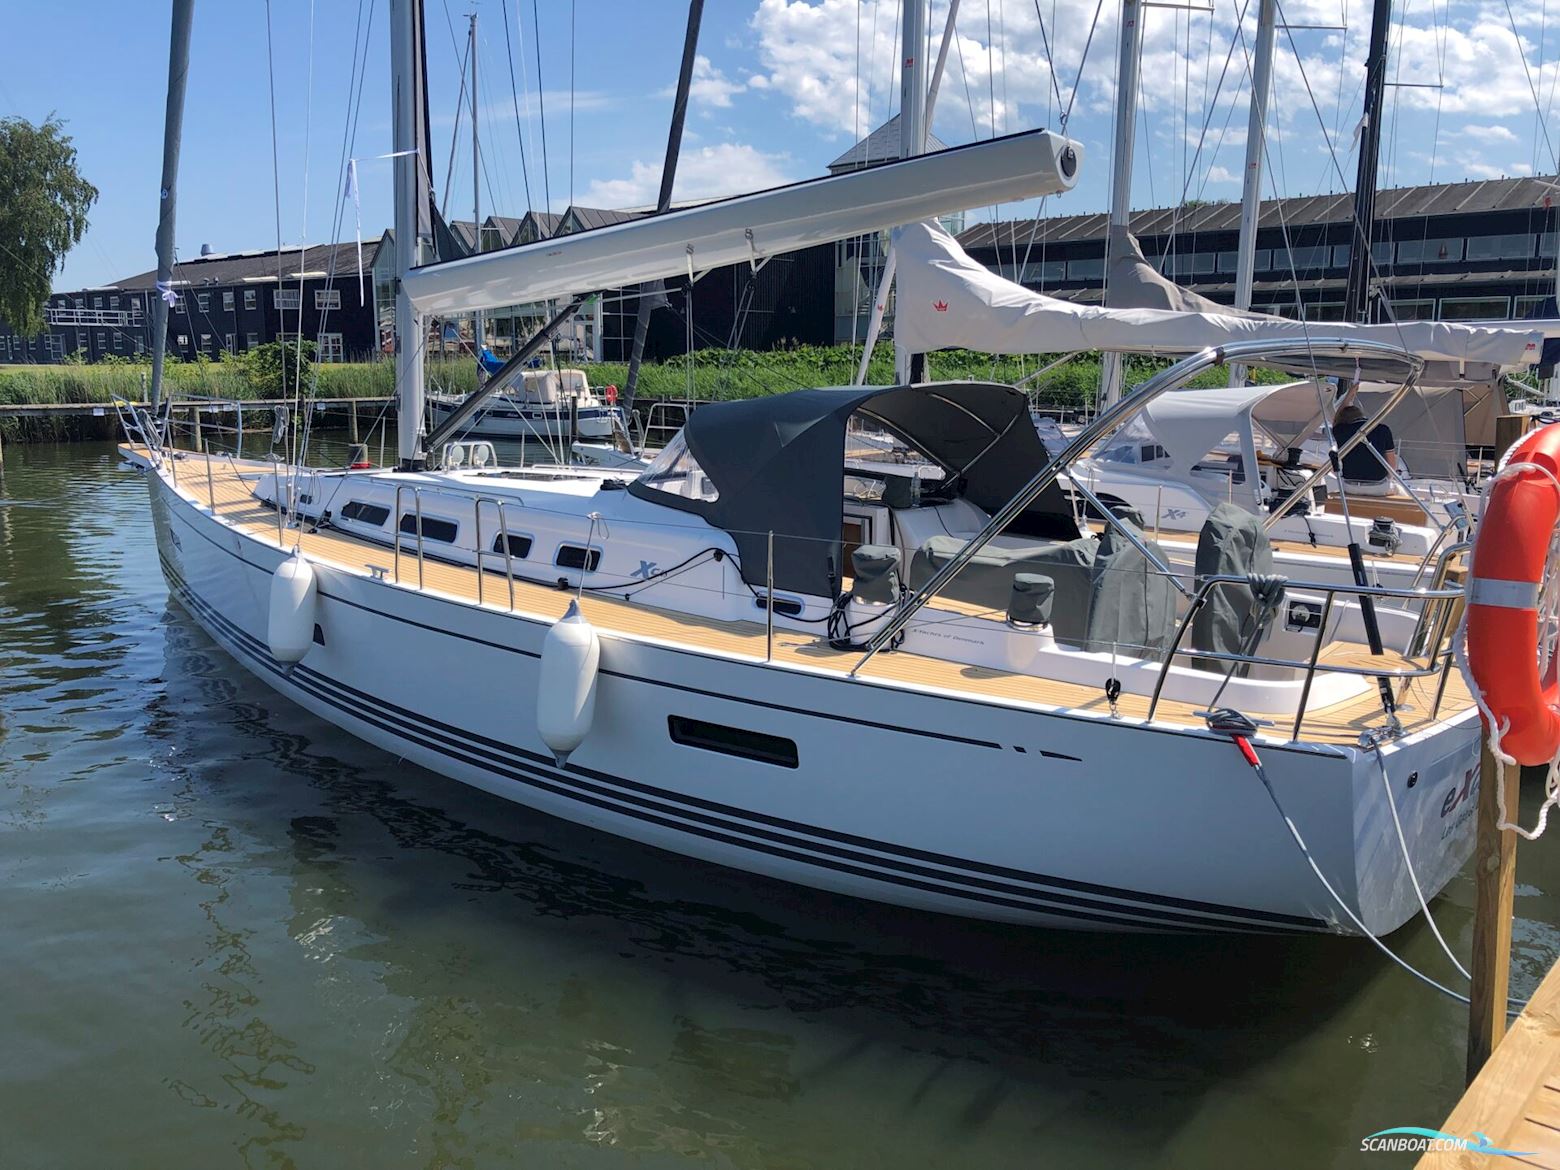 Xc 45 - X-Yachts Segelbåt 2019, USA